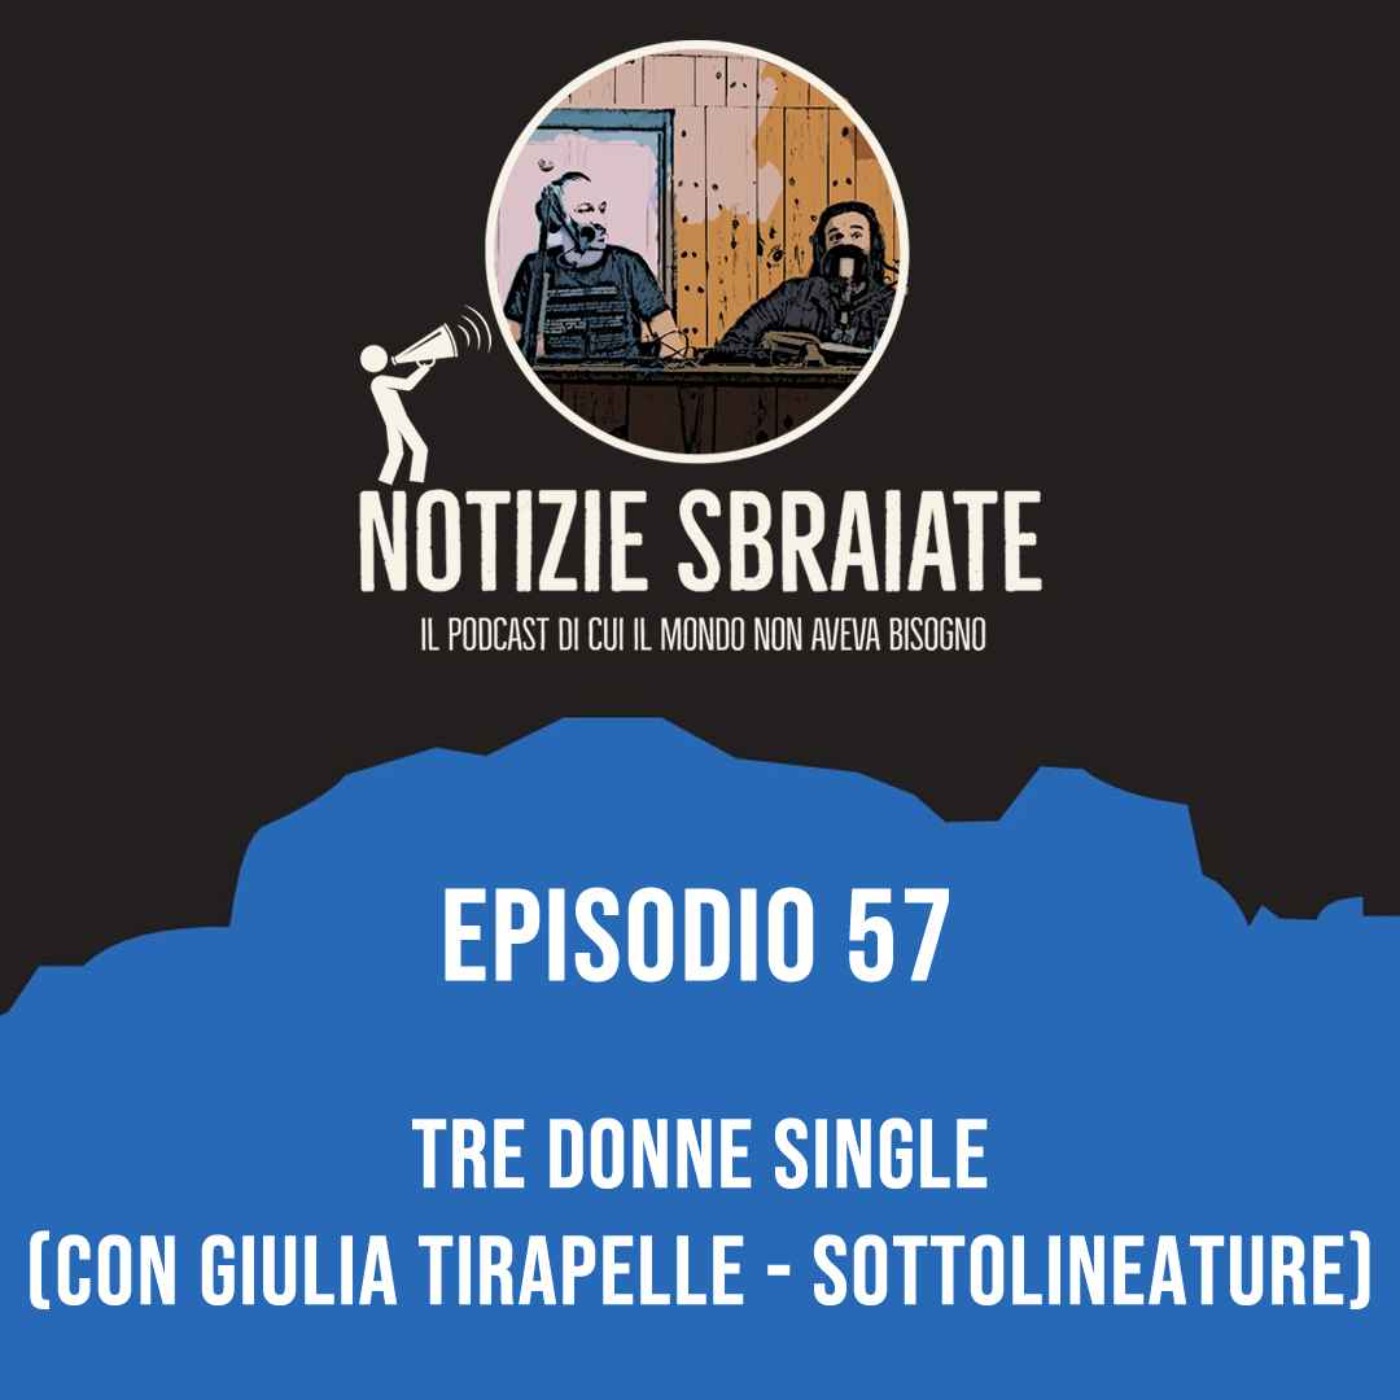 Episodio 57: Tre donne single (con Giulia Tirapelle - Sottolineature)